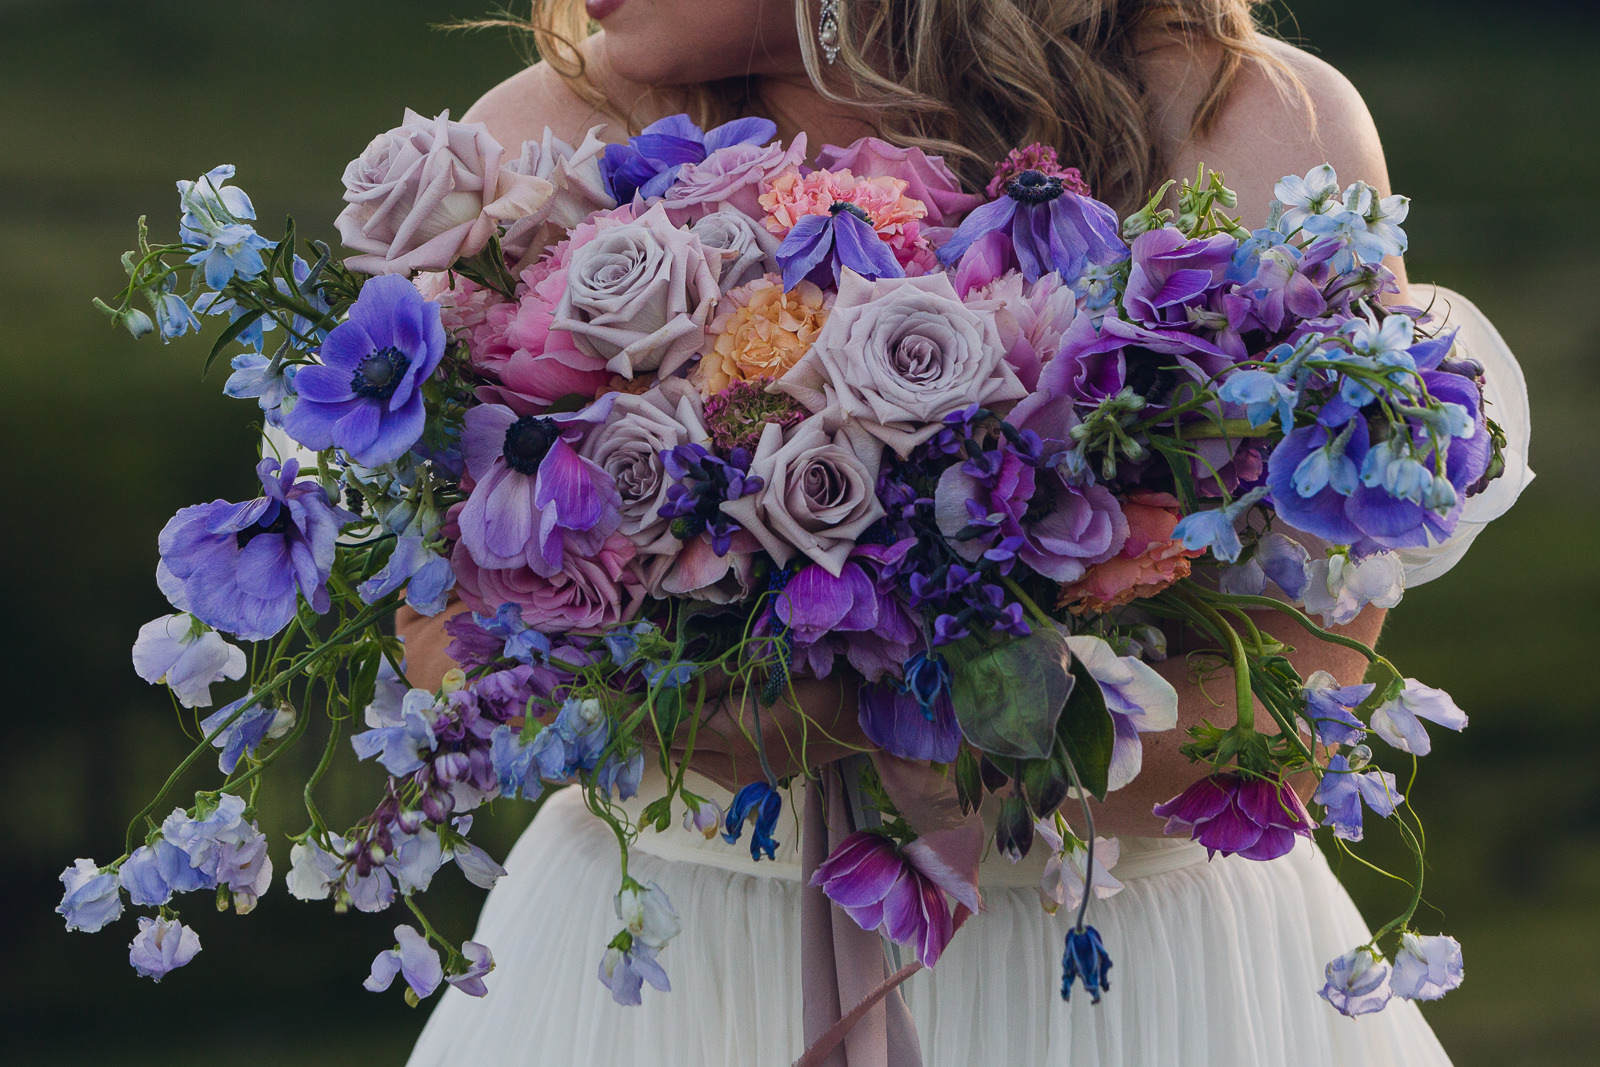 bride holding bouquet of purple anemones, roses, delphinium, sweet pea